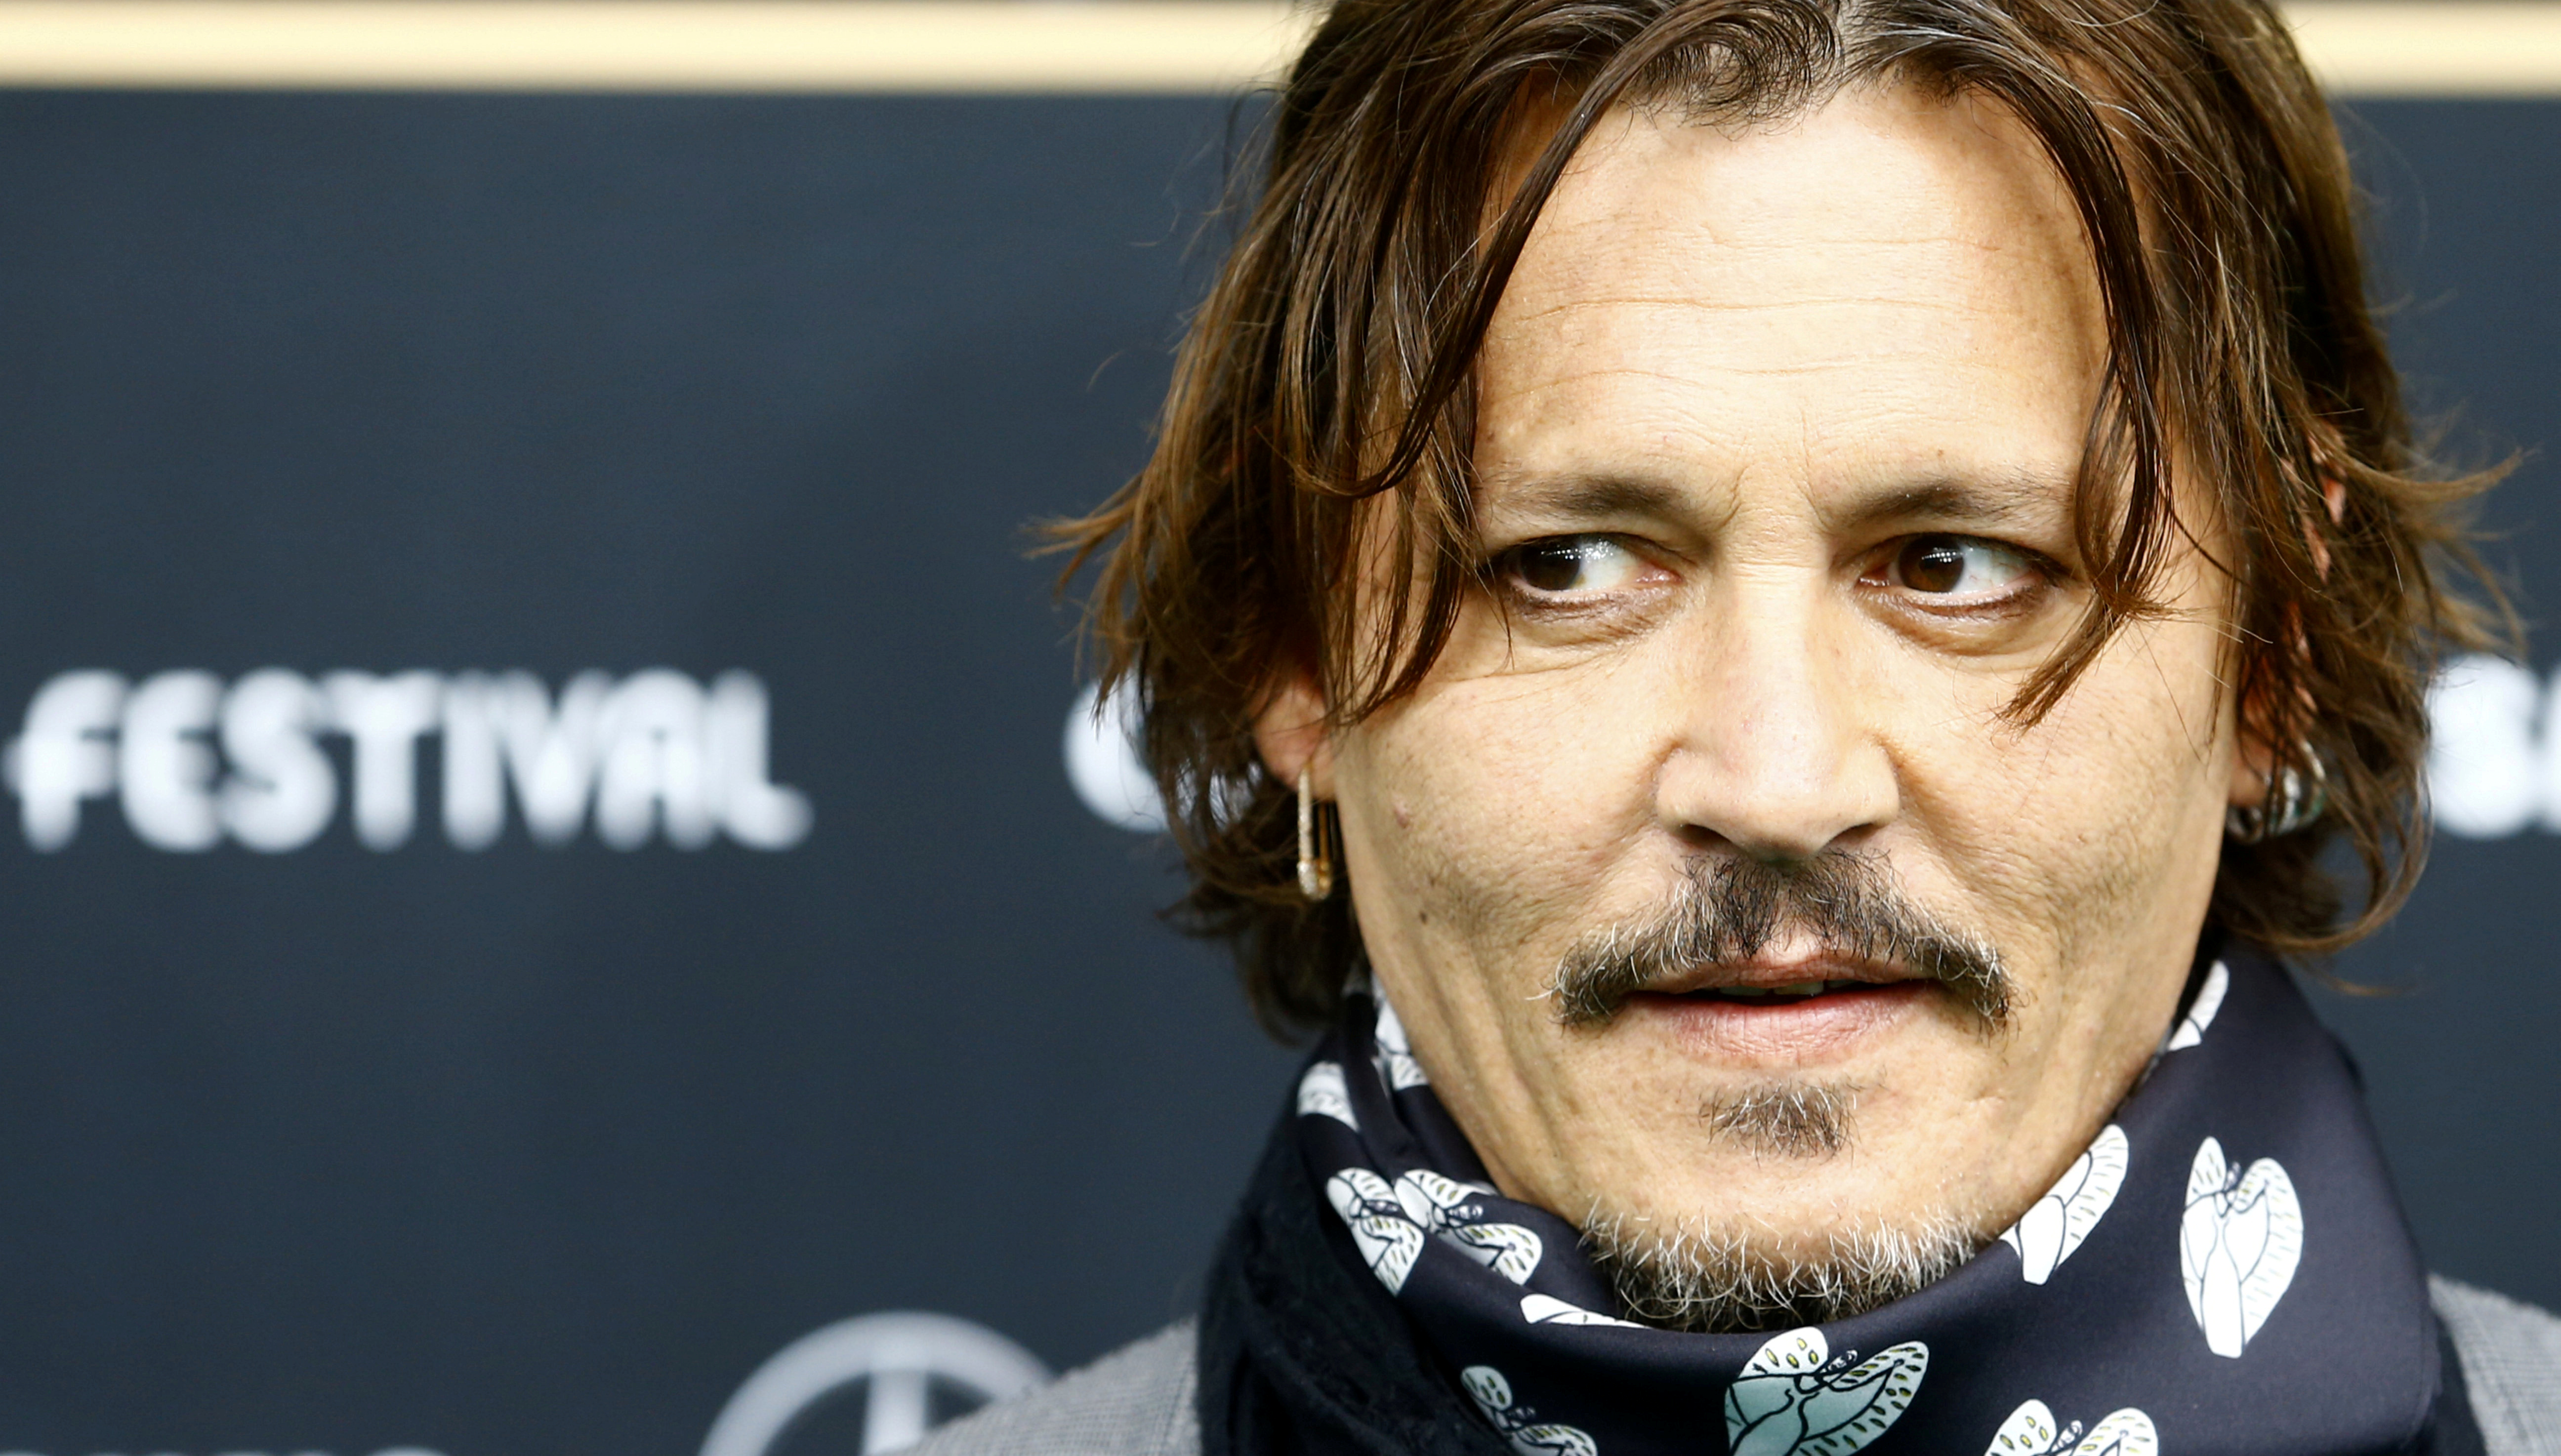 Juez británico dictará sentencia el #2Nov en caso de violencia doméstica contra Johnny Depp